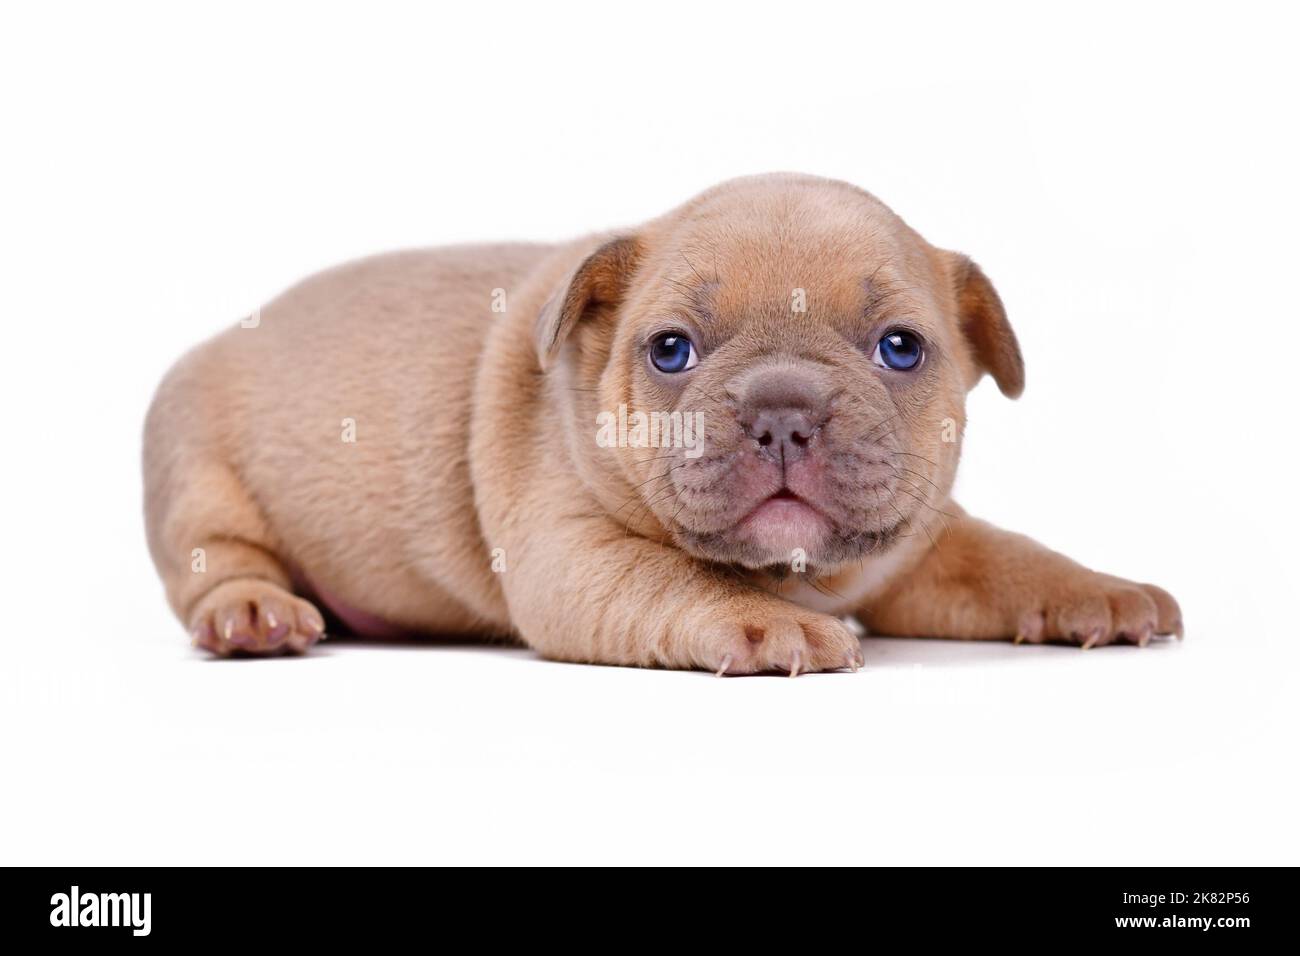 Cute crema lilla fawn colorato 3 settimane francese Bulldog cucciolo con occhi blu su sfondo bianco Foto Stock